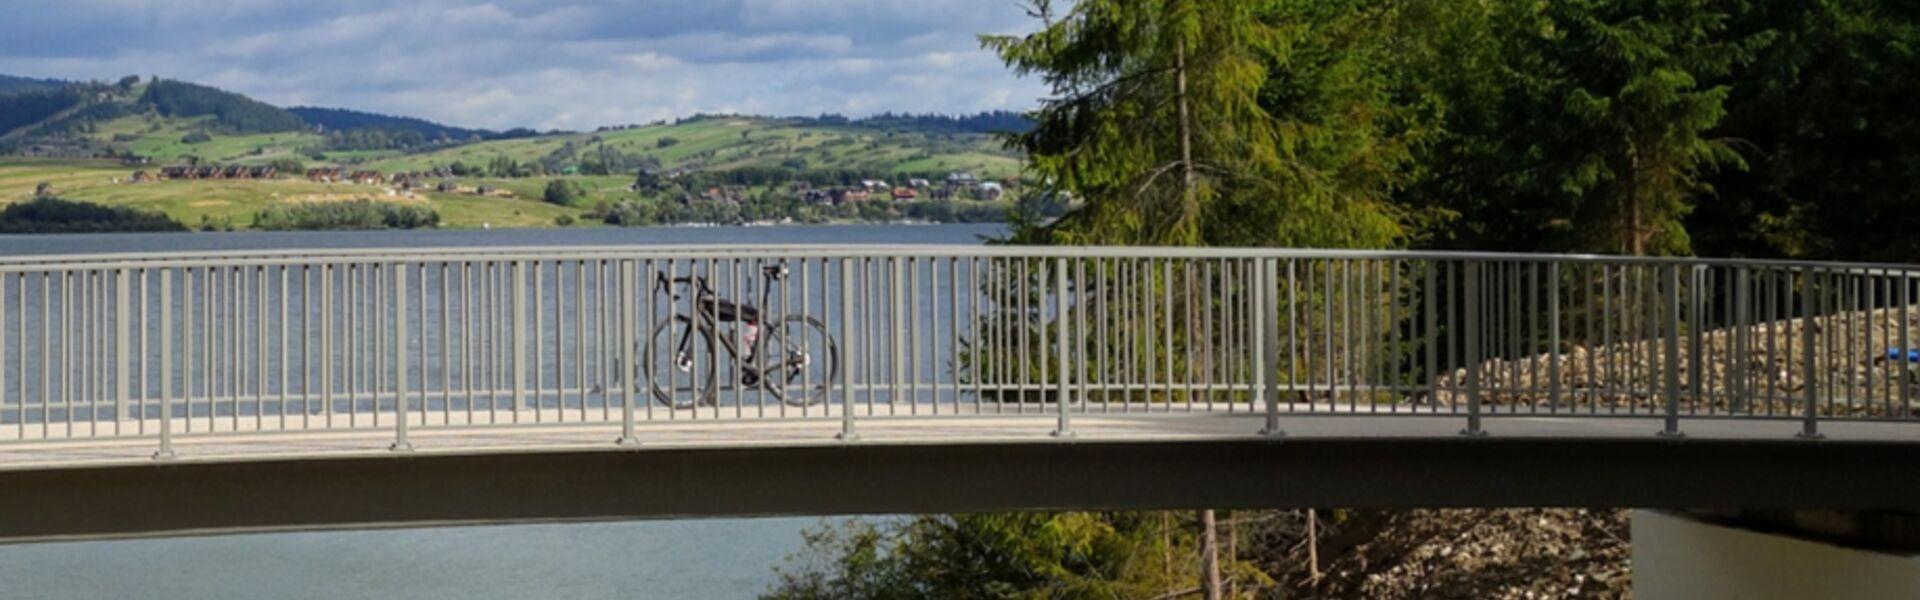 Nowe obiekt mostowy na VeloDunajec (jezioro Czorsztyński)